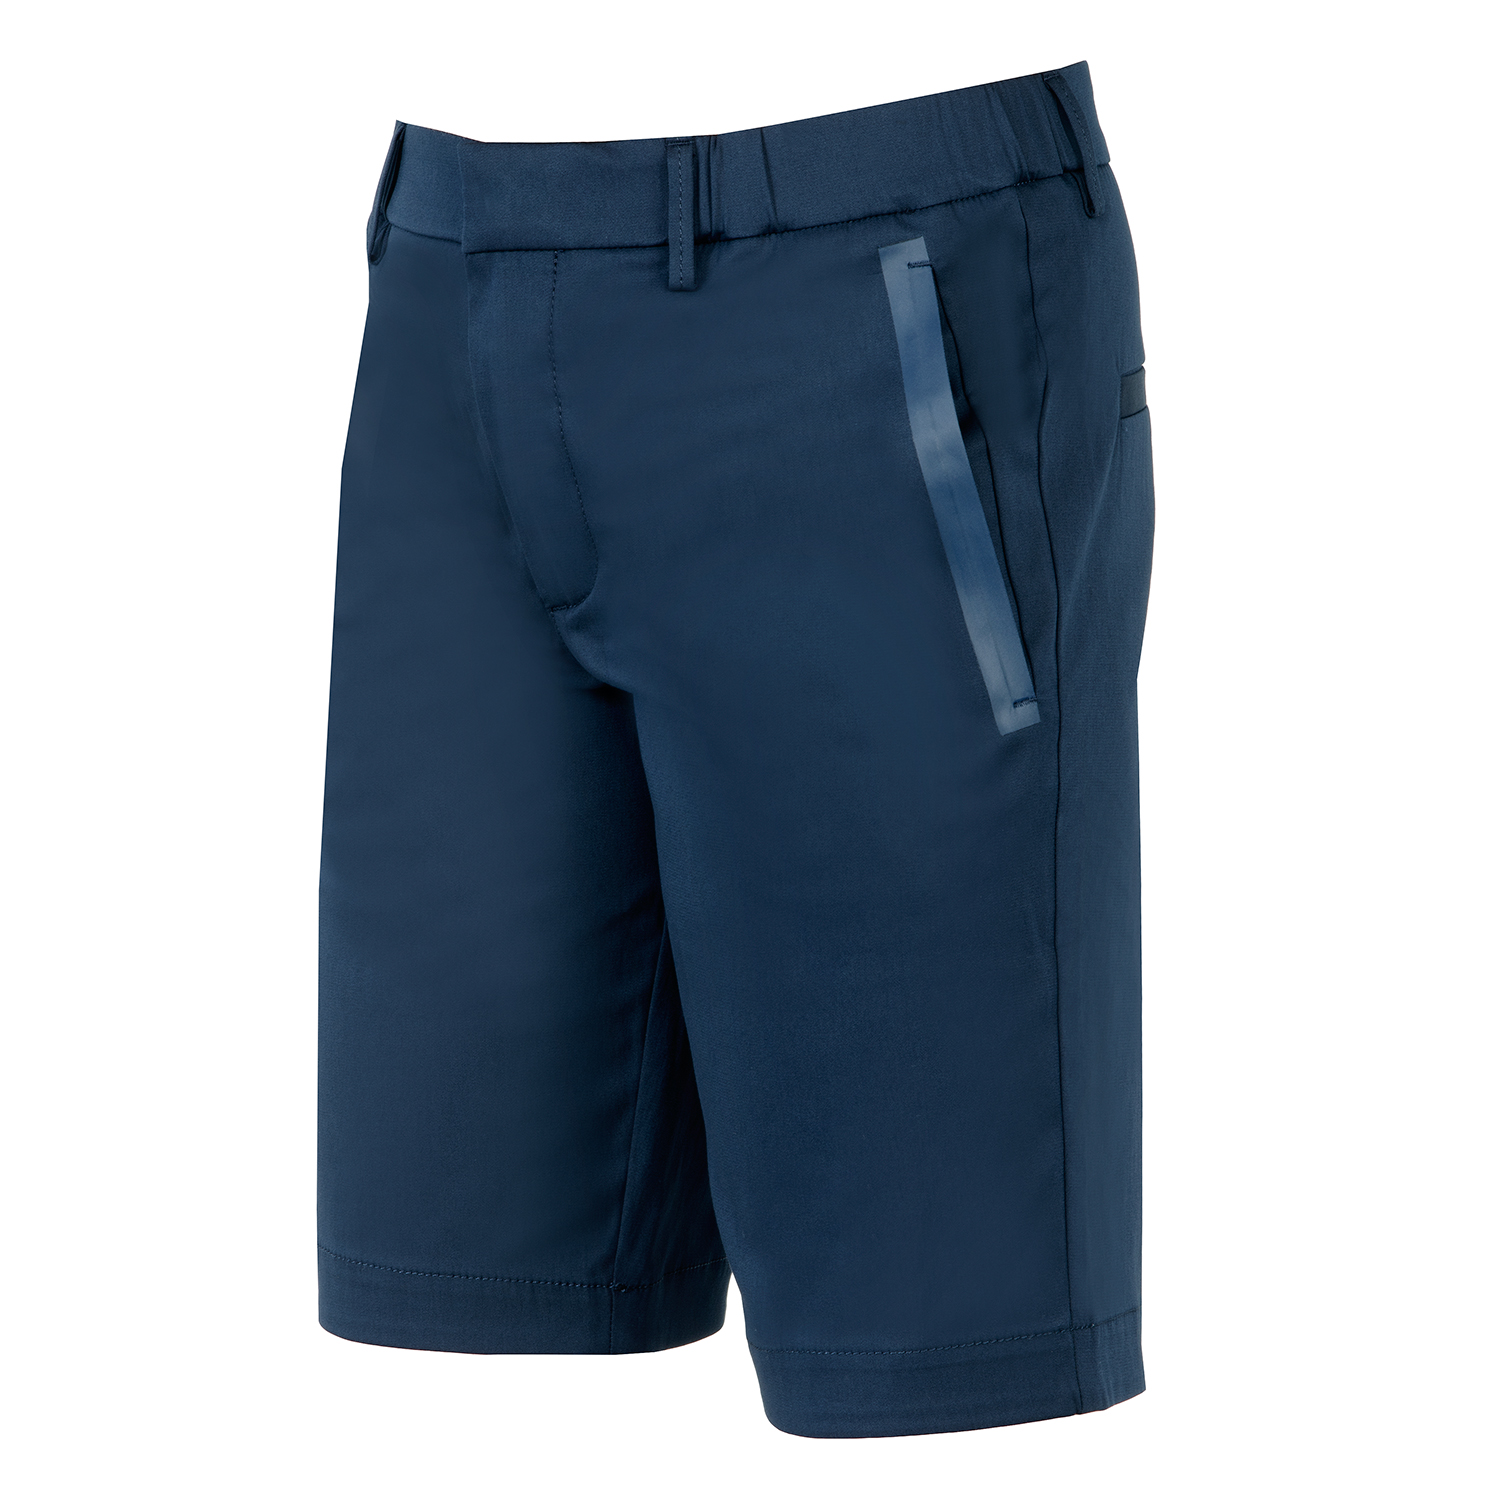 HUGO BOSS Liem 4-10 Chino Shorts Navy | Scottsdale Golf